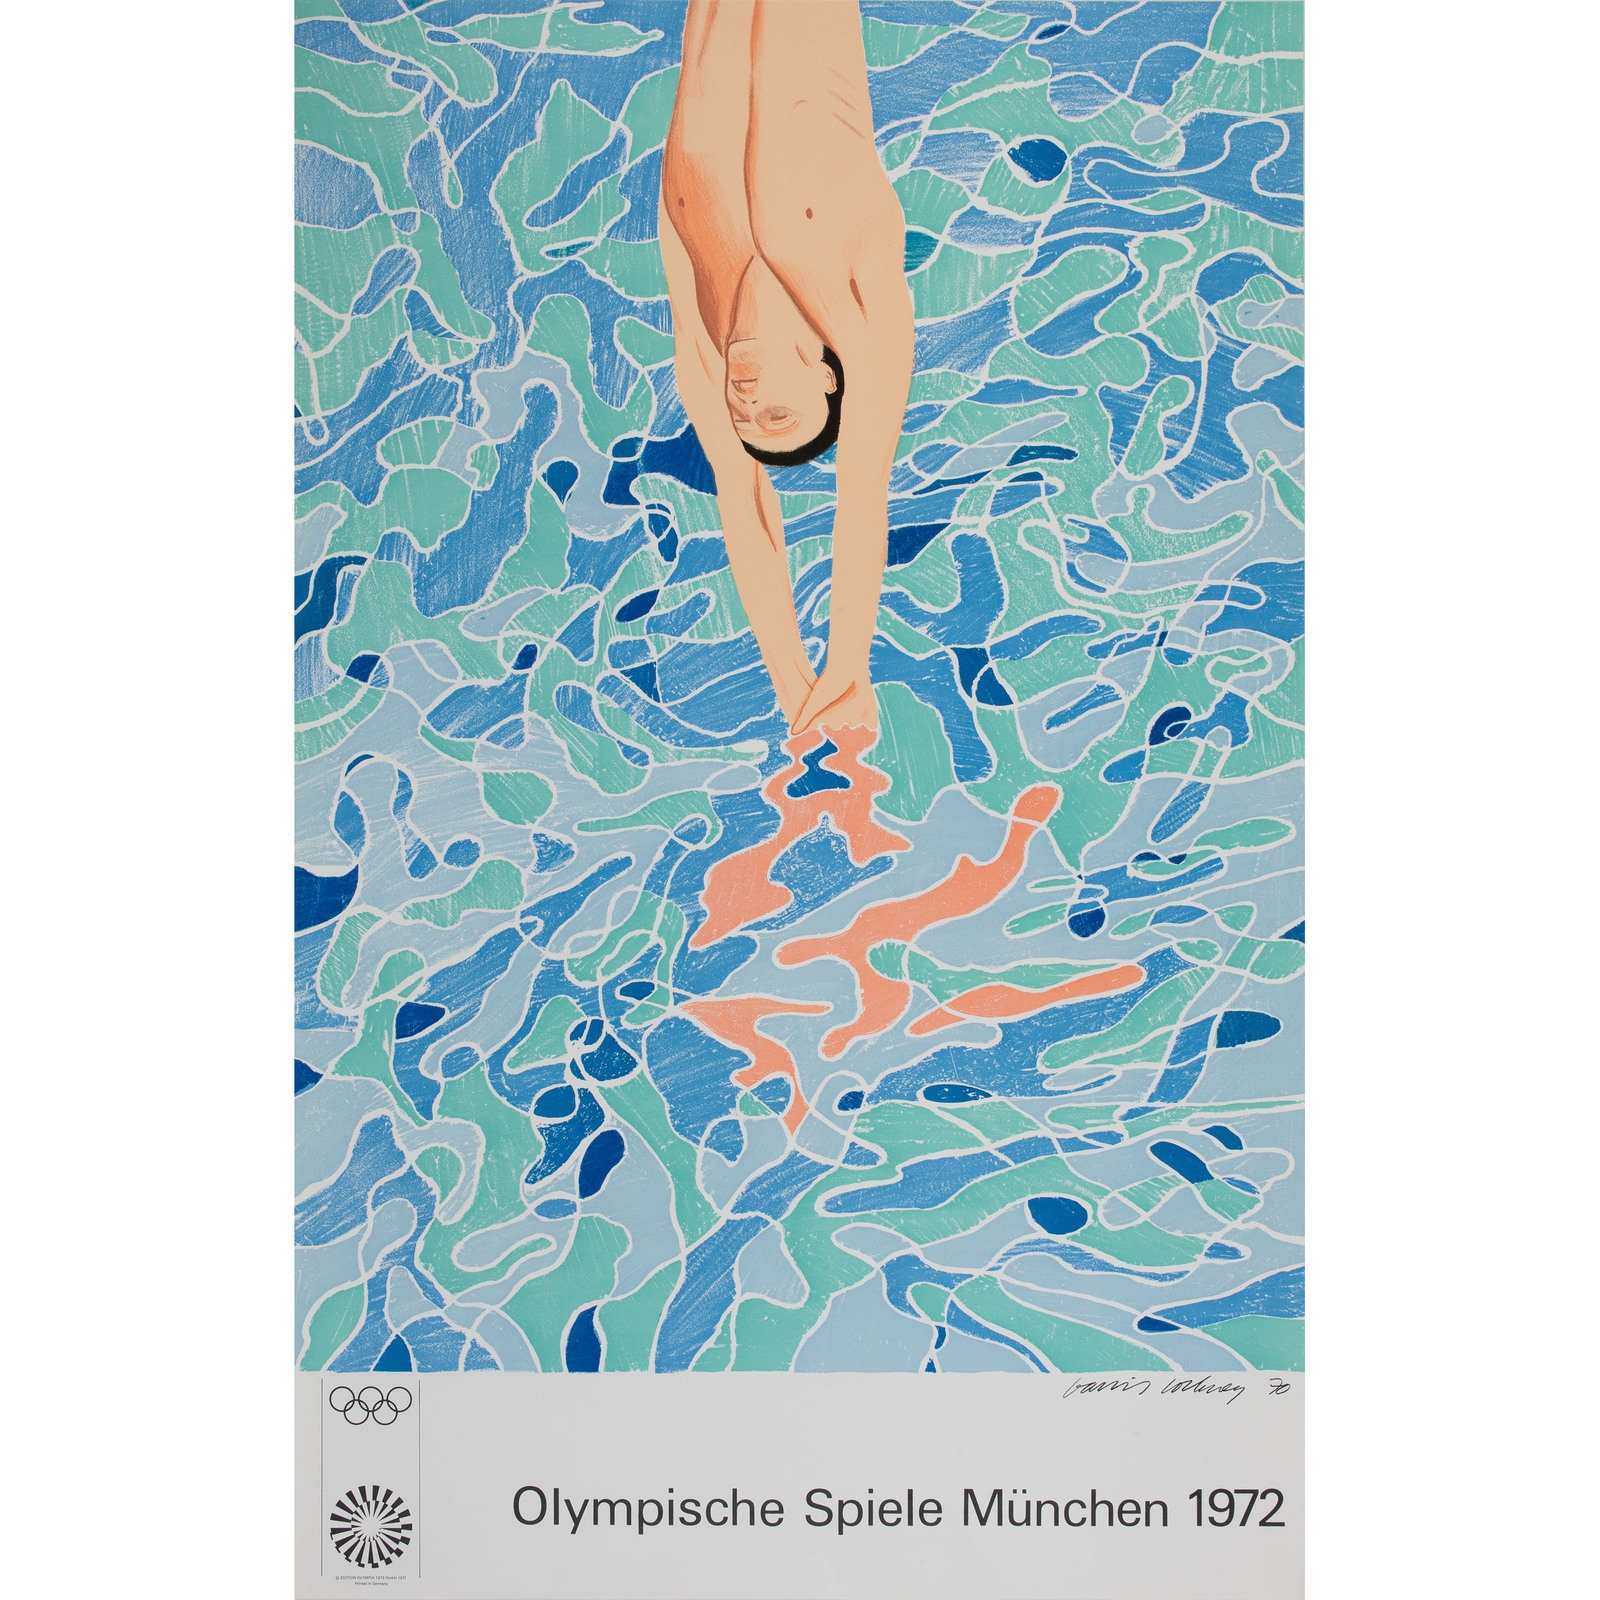 A David Hockney Poster for Olympische Spiele Munchen, 1972 by David Hockney, 1972